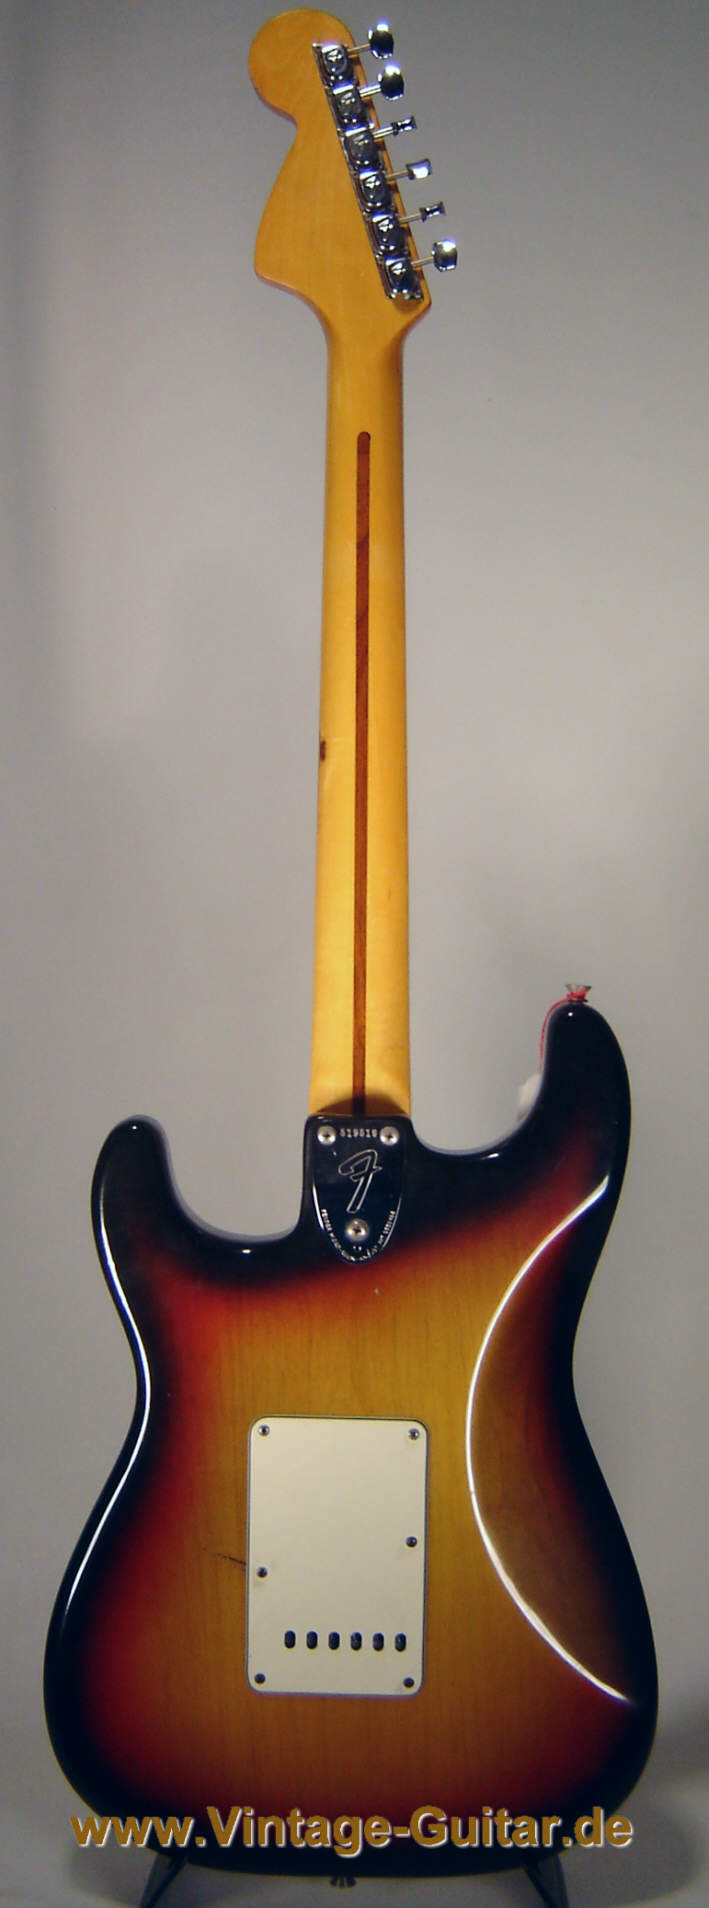 Fender_Stratocaster_1973_sunburst-3.jpg